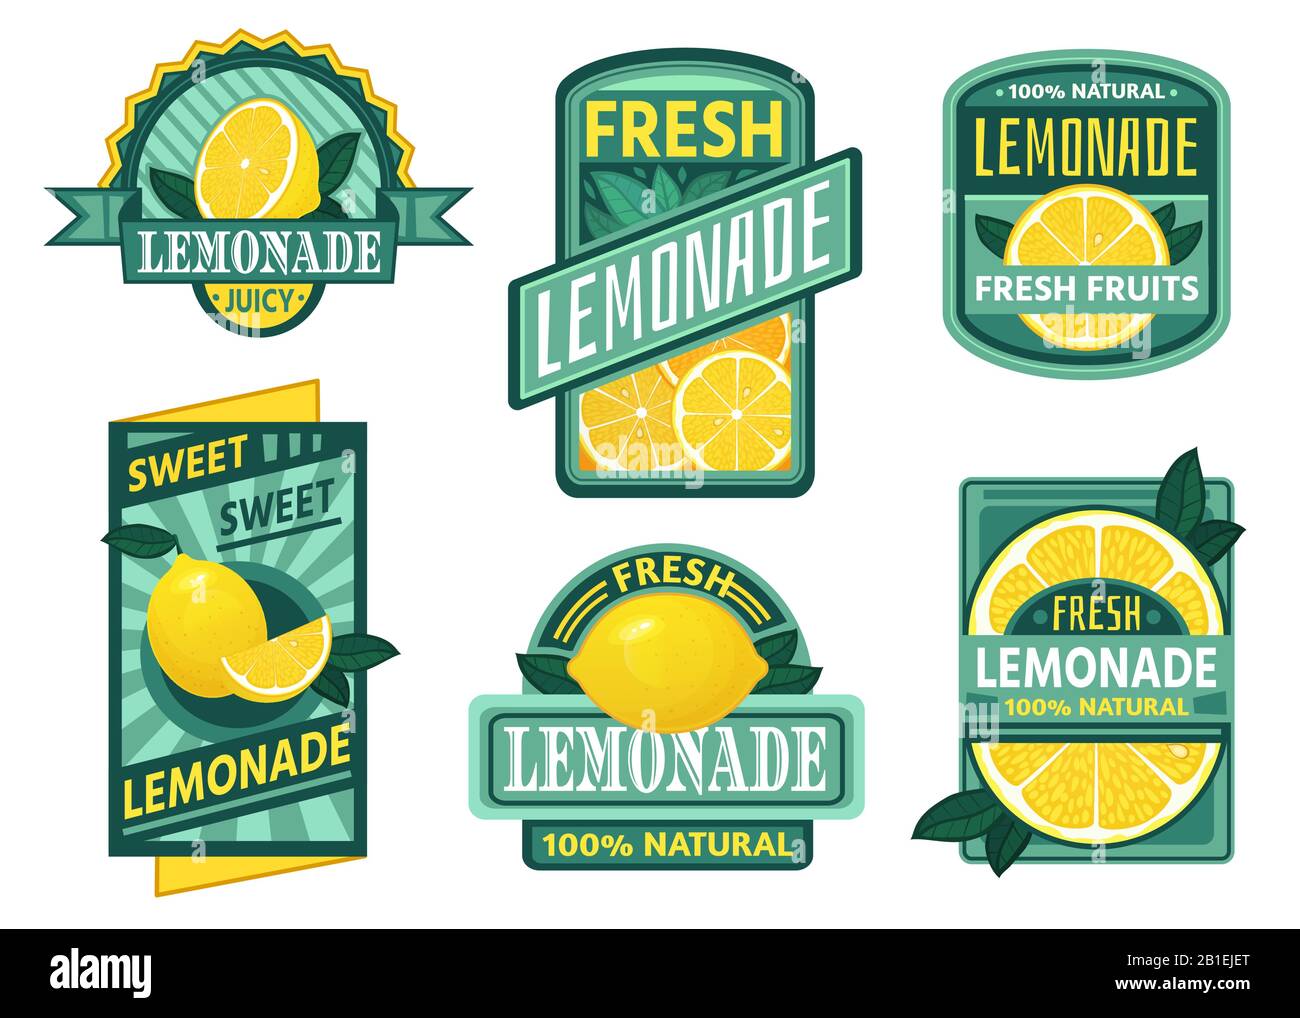 Limonadeabzeichen. Zitronensaft, frische Limonaden Embleme und Zitronen Fruchtsaft trinken Vintage-Abzeichen Vektor-Set Stock Vektor